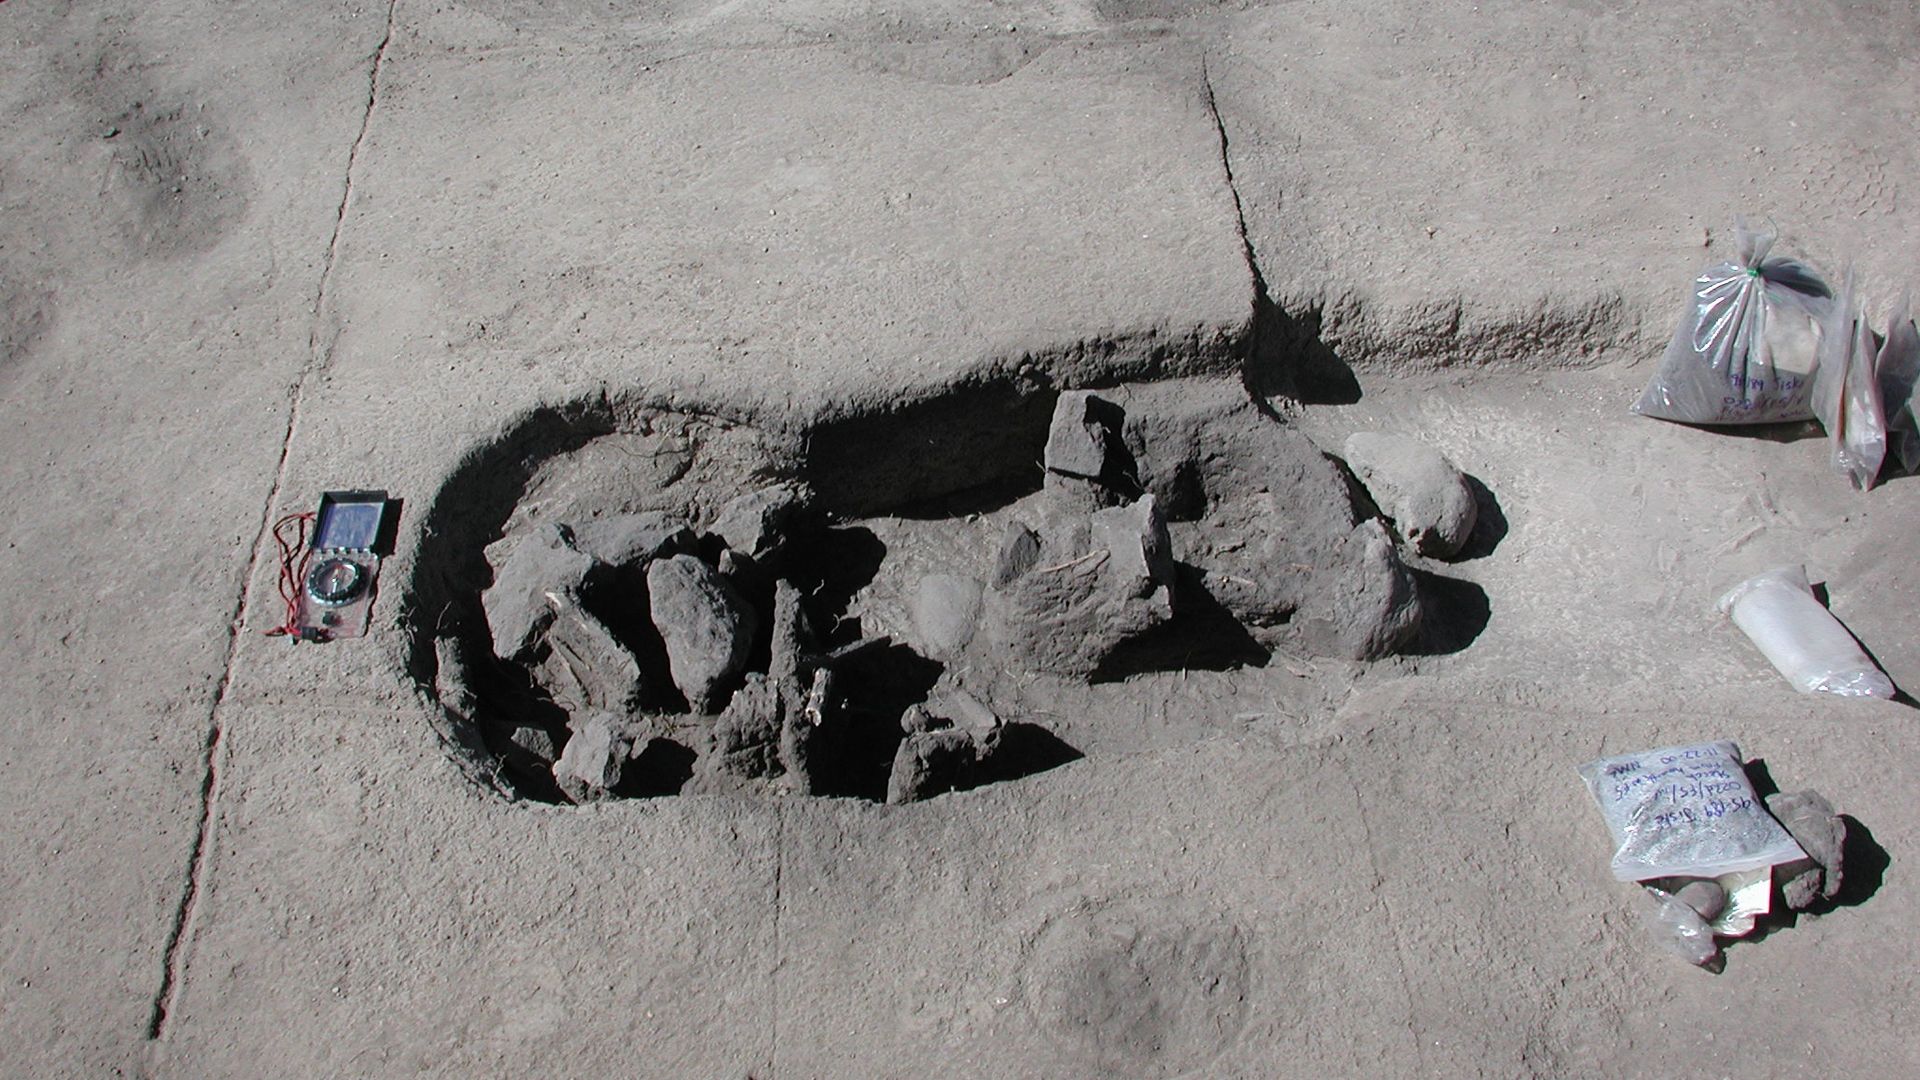 Pre-Columbian archaeolgical burial site at Jiskairumoko, southeast of Puno, Peru.